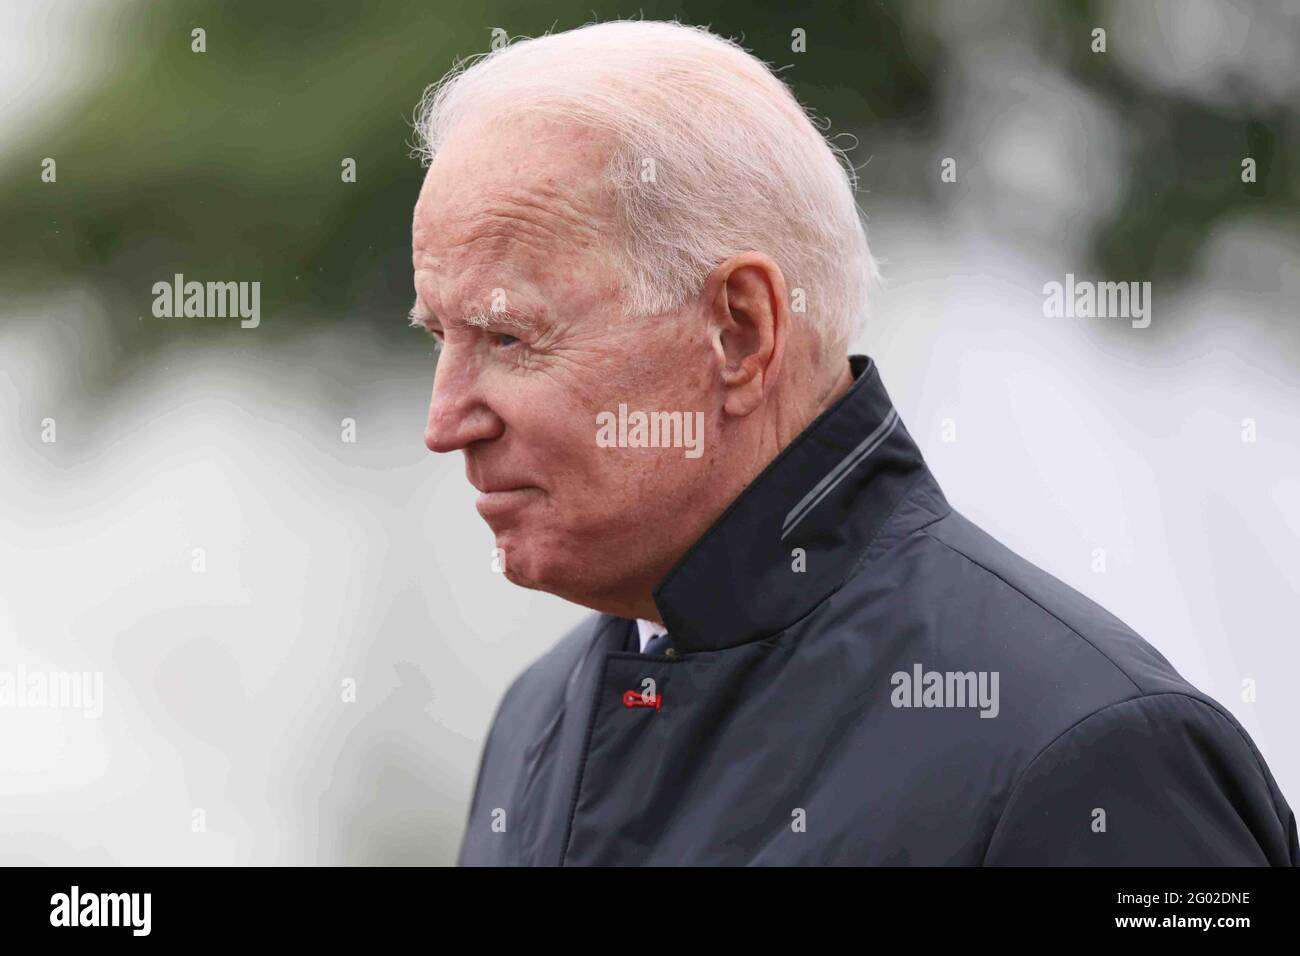 Der Präsident der Vereinigten Staaten, Joe Biden, fährt am Sonntag, den 30. Mai 2021, im Veterans Memorial Park in New Castle, Delaware, zu einer traditionellen Gedenkfeier ab.Quelle: Saquan Stimpson/CNP /MediaPunch Stockfoto